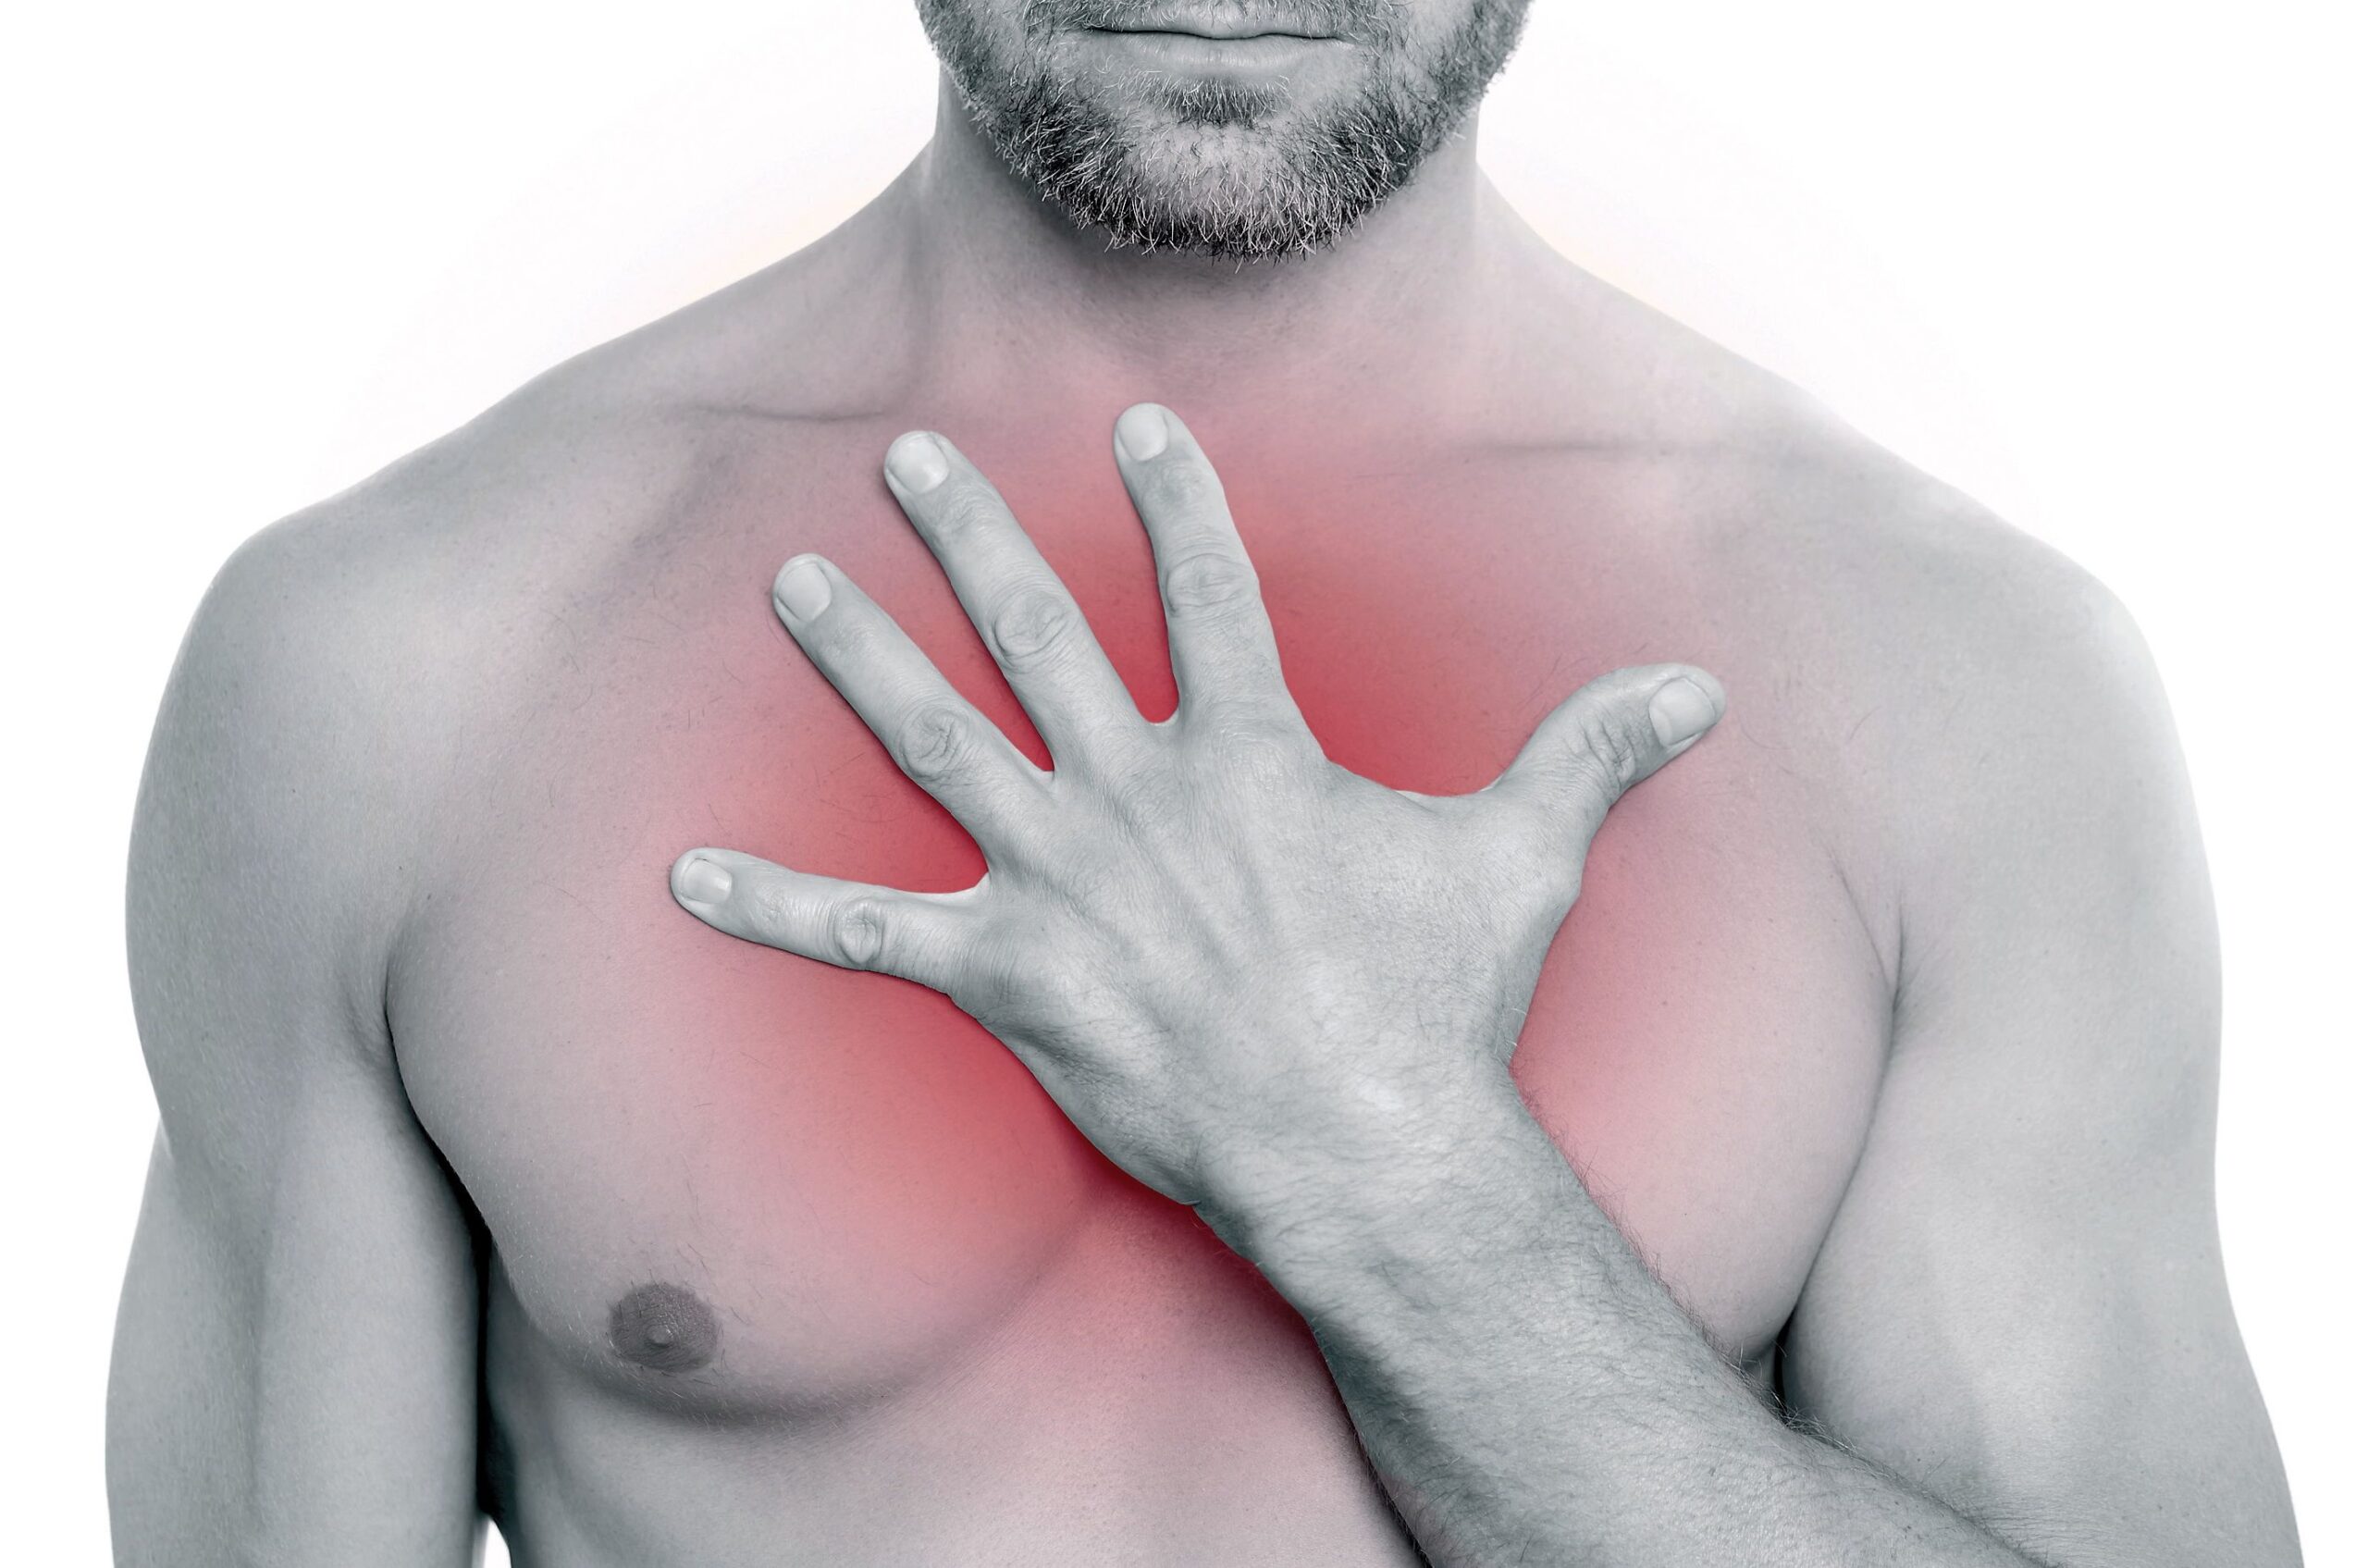 периодическая не острая боль в груди (100) фото